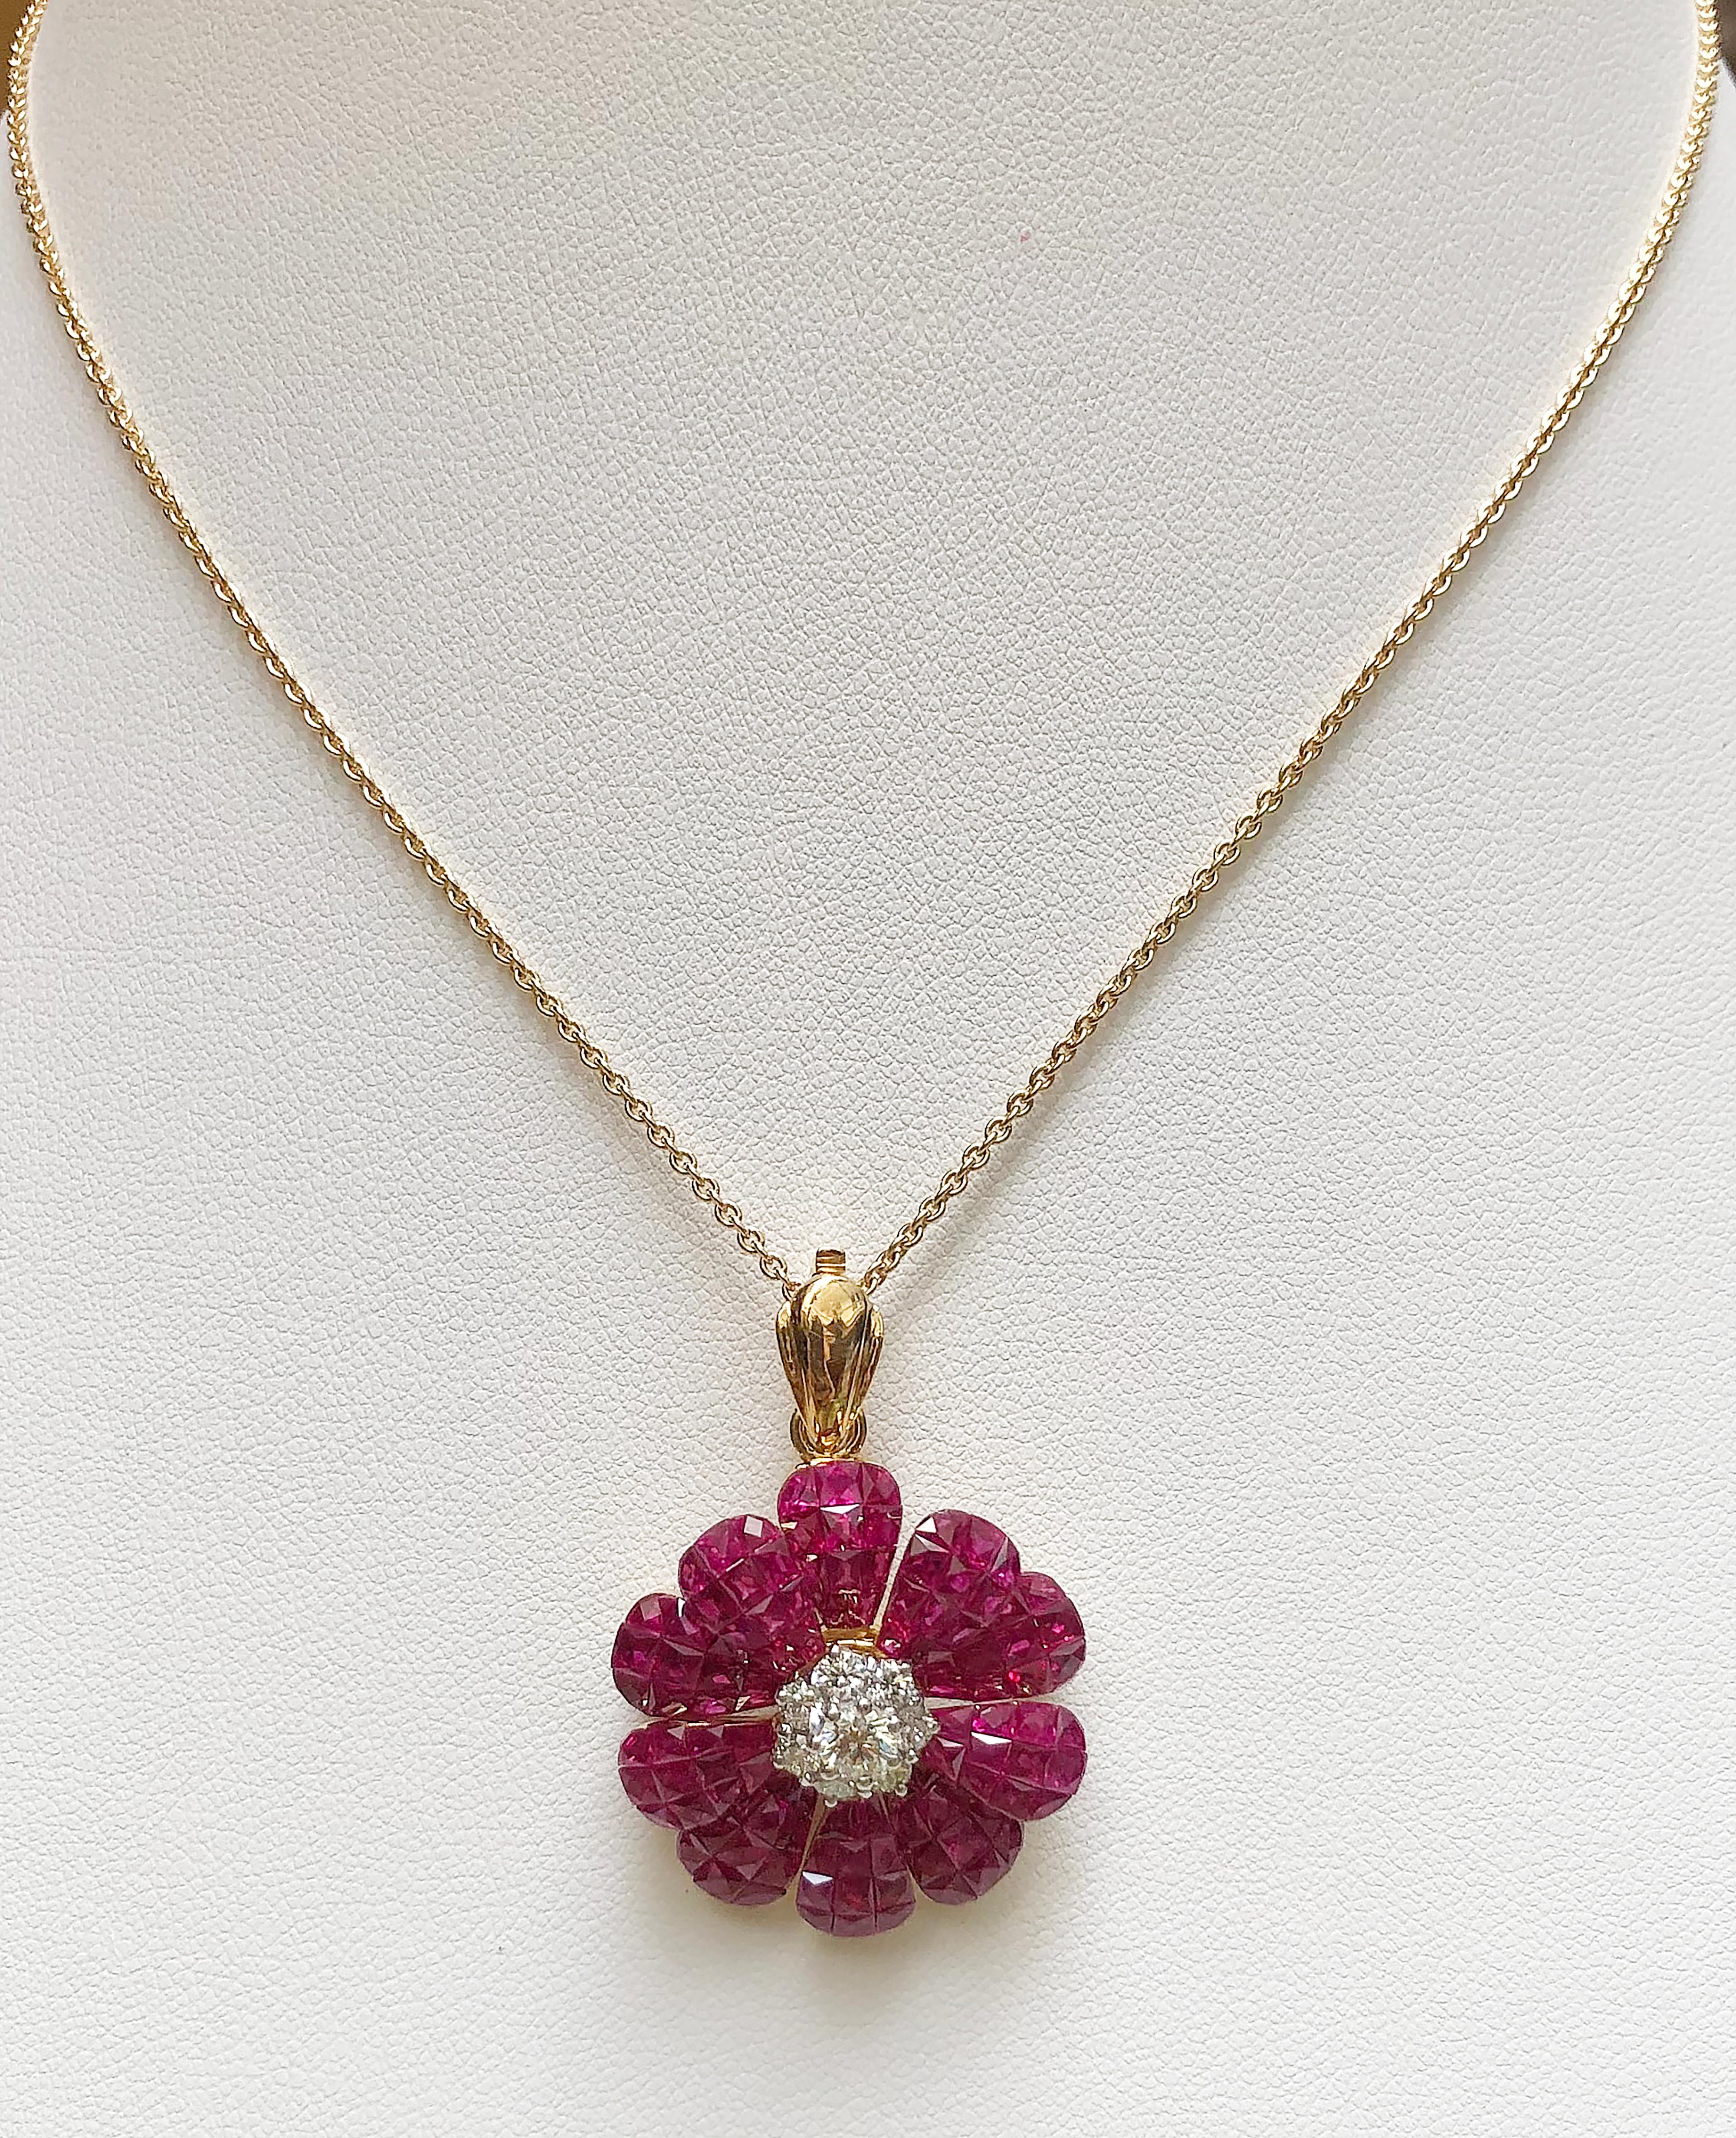 Broche/pendentif en rubis de 9,33 carats et diamant de 0,71 carat dans une monture en or 18 carats
(chaîne non incluse)

Largeur : 2,7 cm
Longueur : 3,8 cm 

